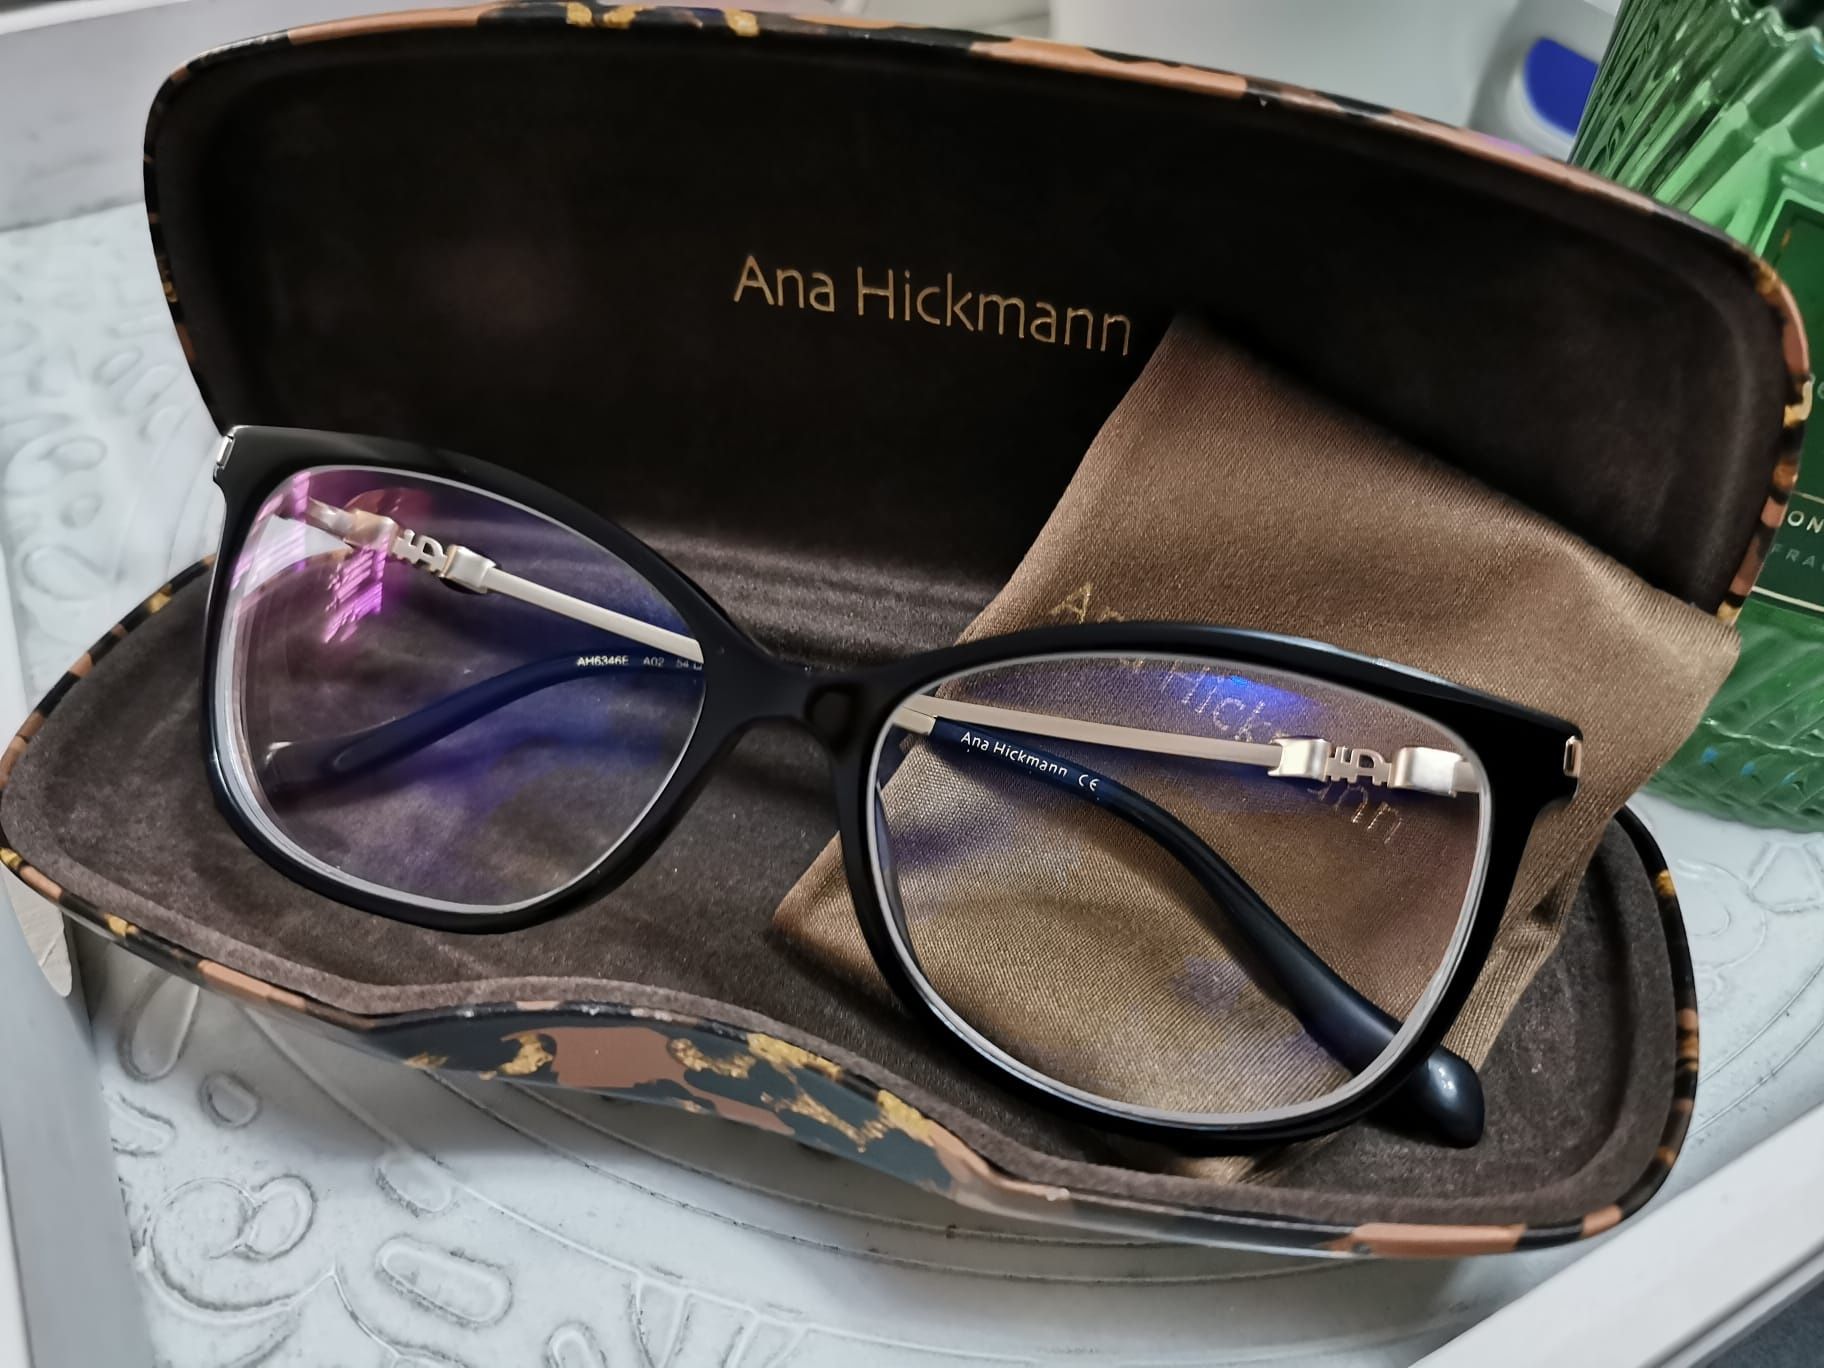 Rame ochelari Ana Hickmann + lentile cu dioptrii de -2.25 cu protectii